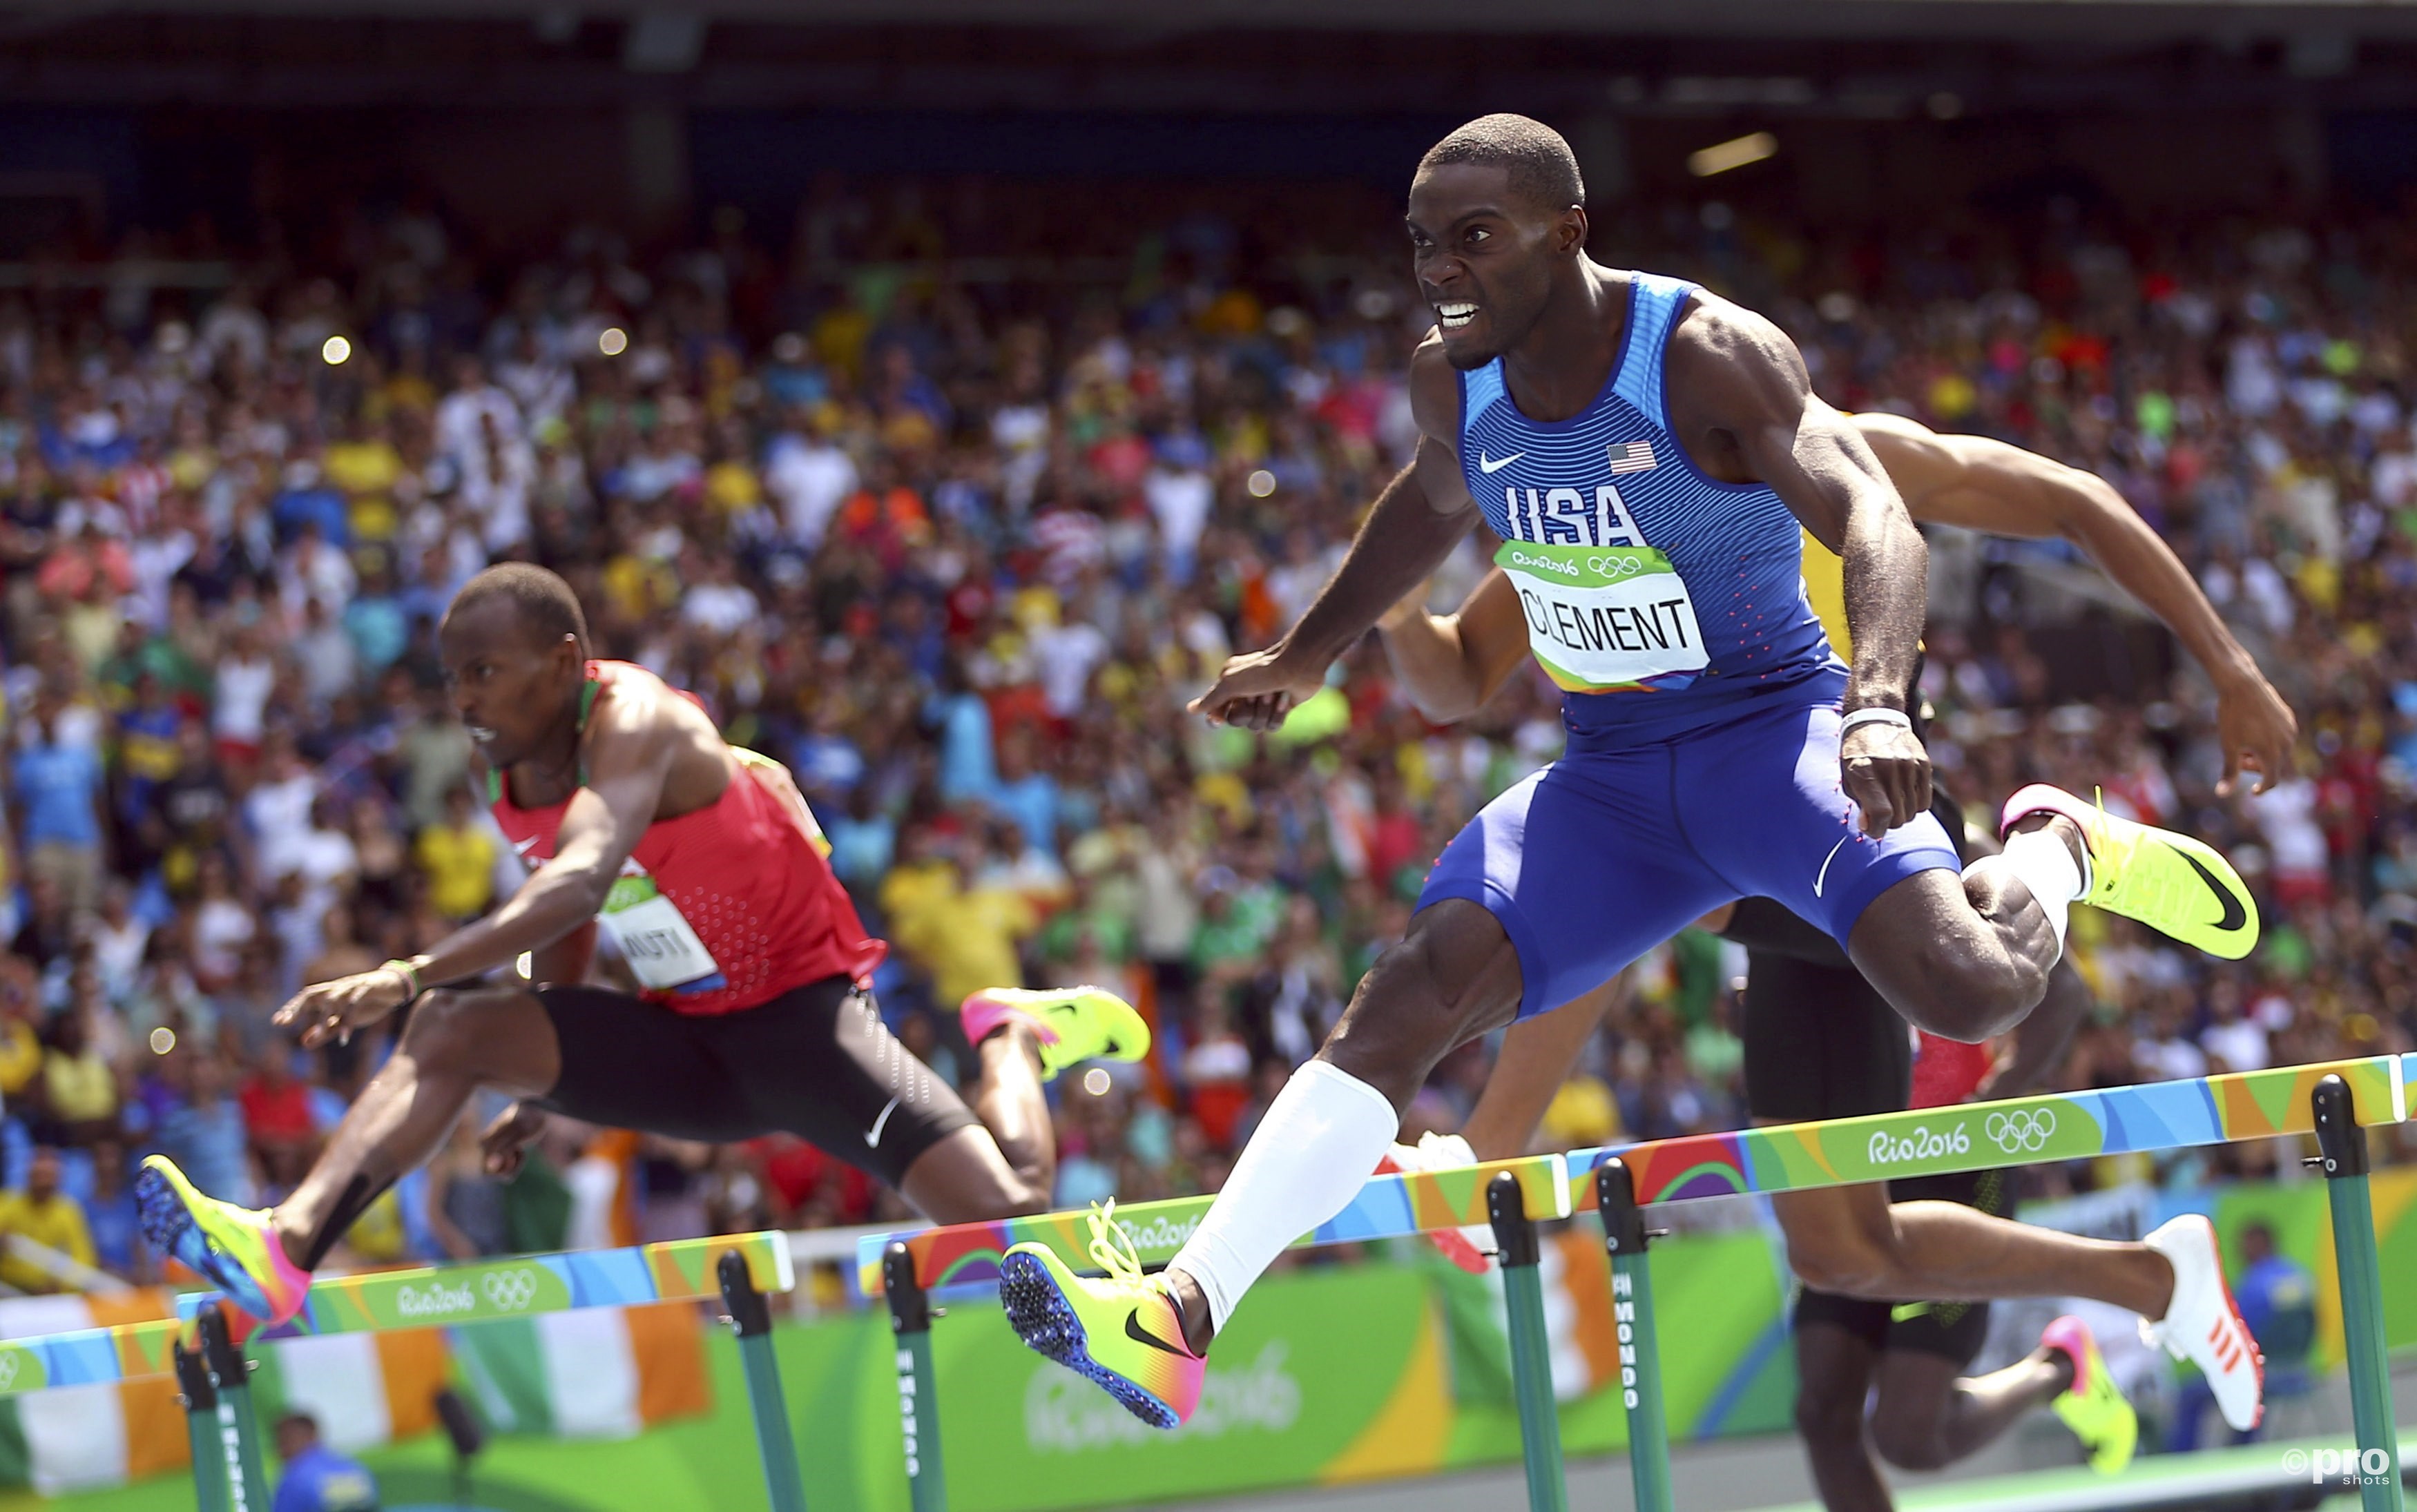 Clement springt en rent eindelijk naar olympisch goud (PROSHOTS/Action Images)